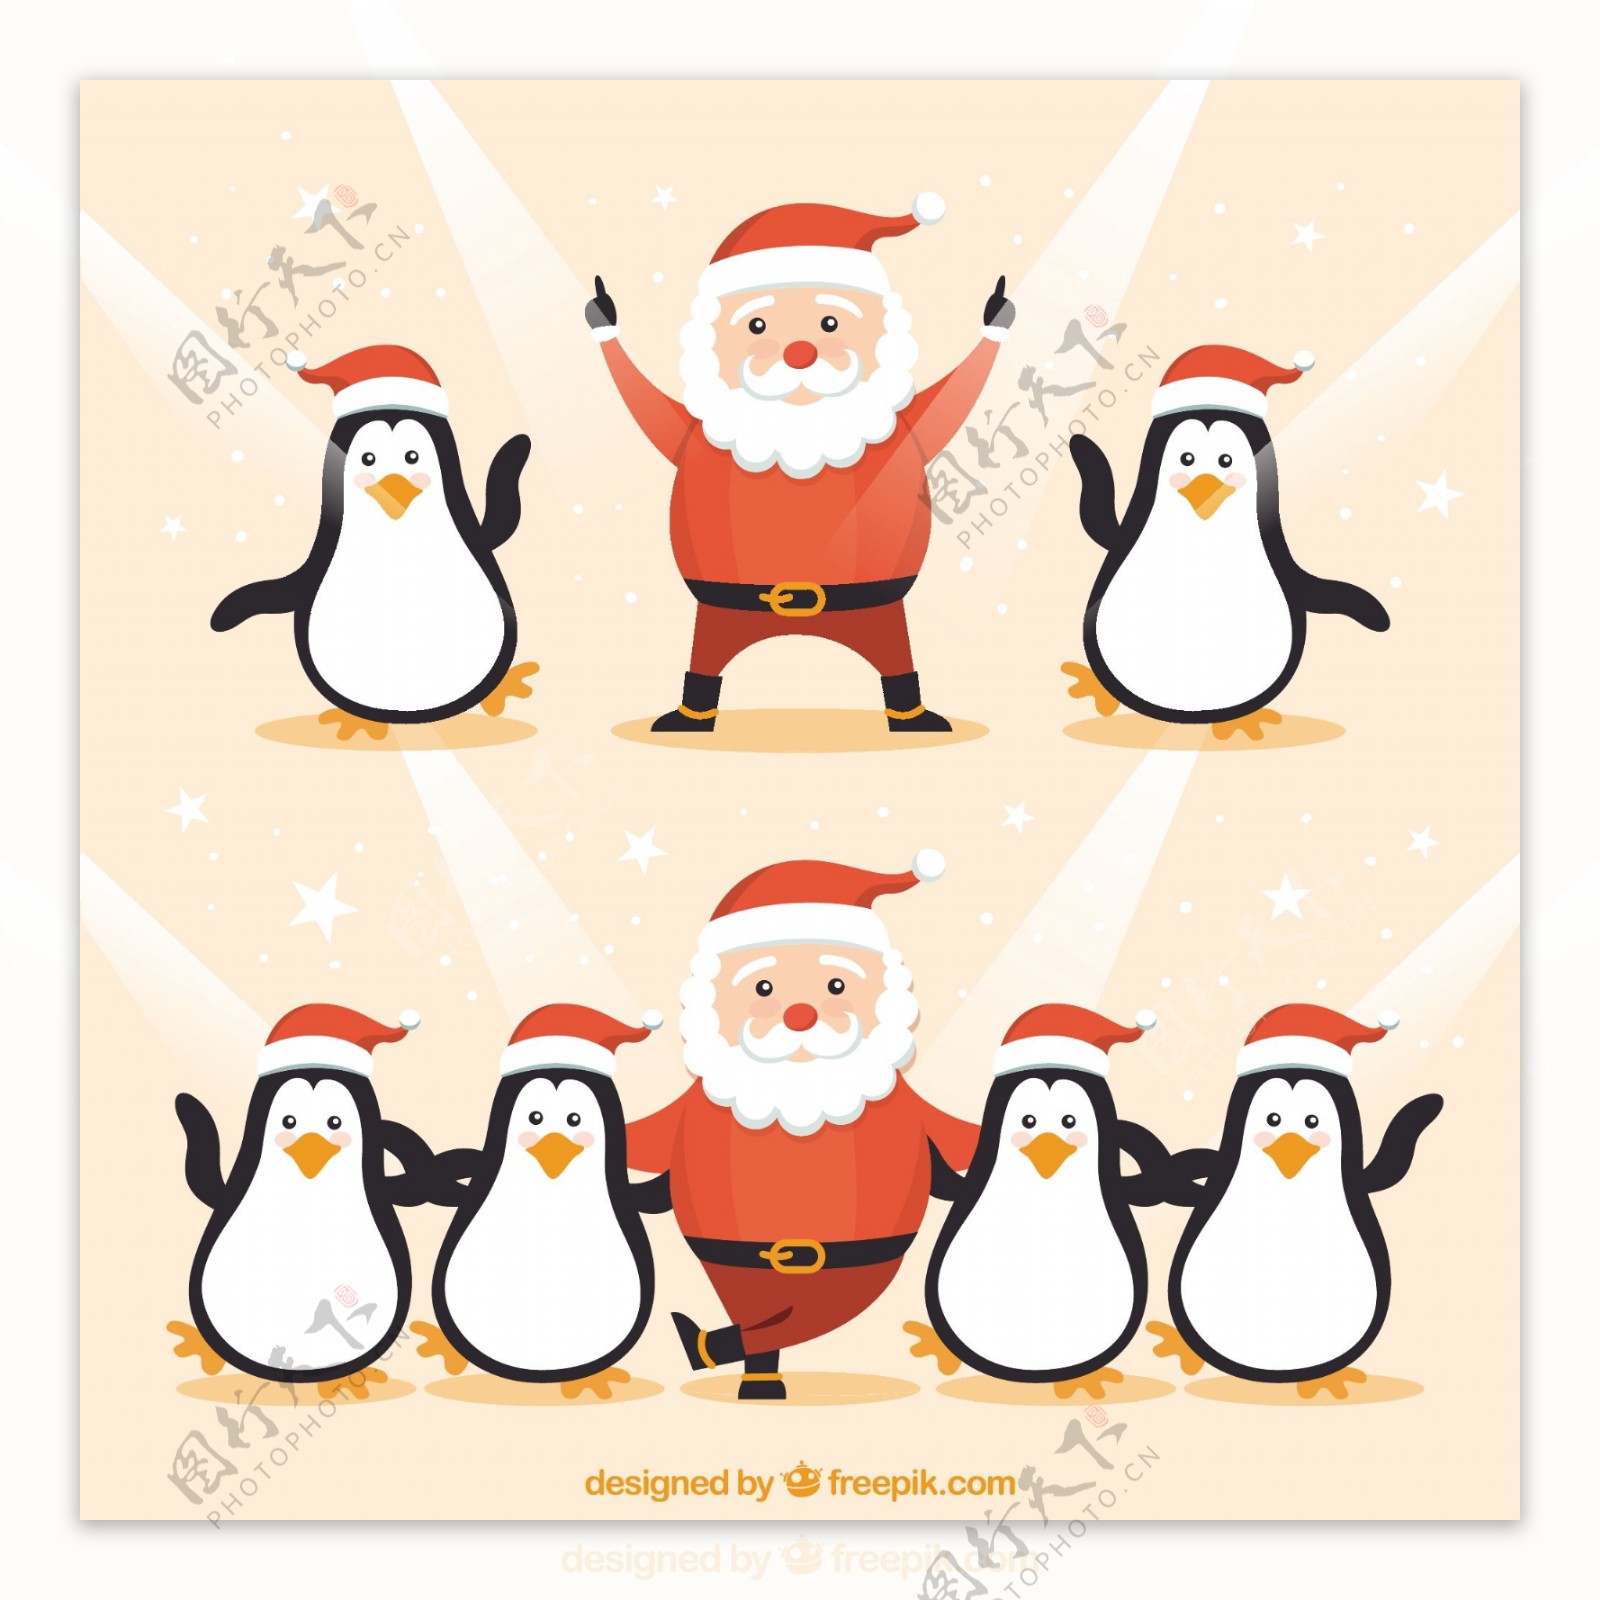 有趣的圣诞老人克劳斯和企鹅跳舞